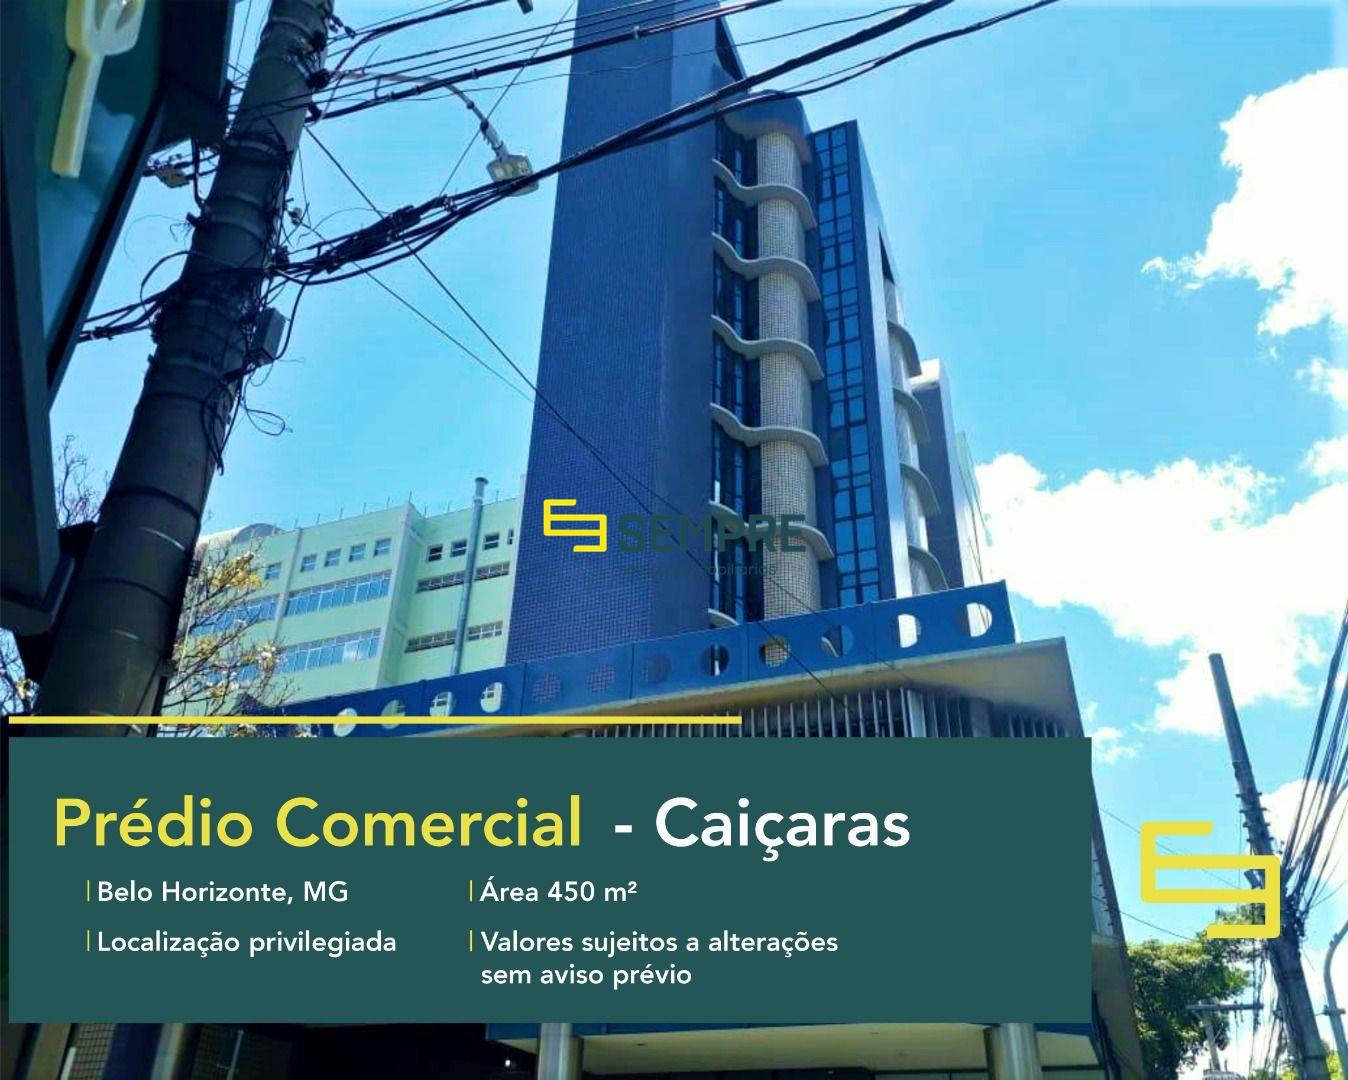 Prédio comercial para alugar no Caiçaras em Belo Horizonte, excelente localização. O edifício comercial conta, sobretudo, com área de 450 m².